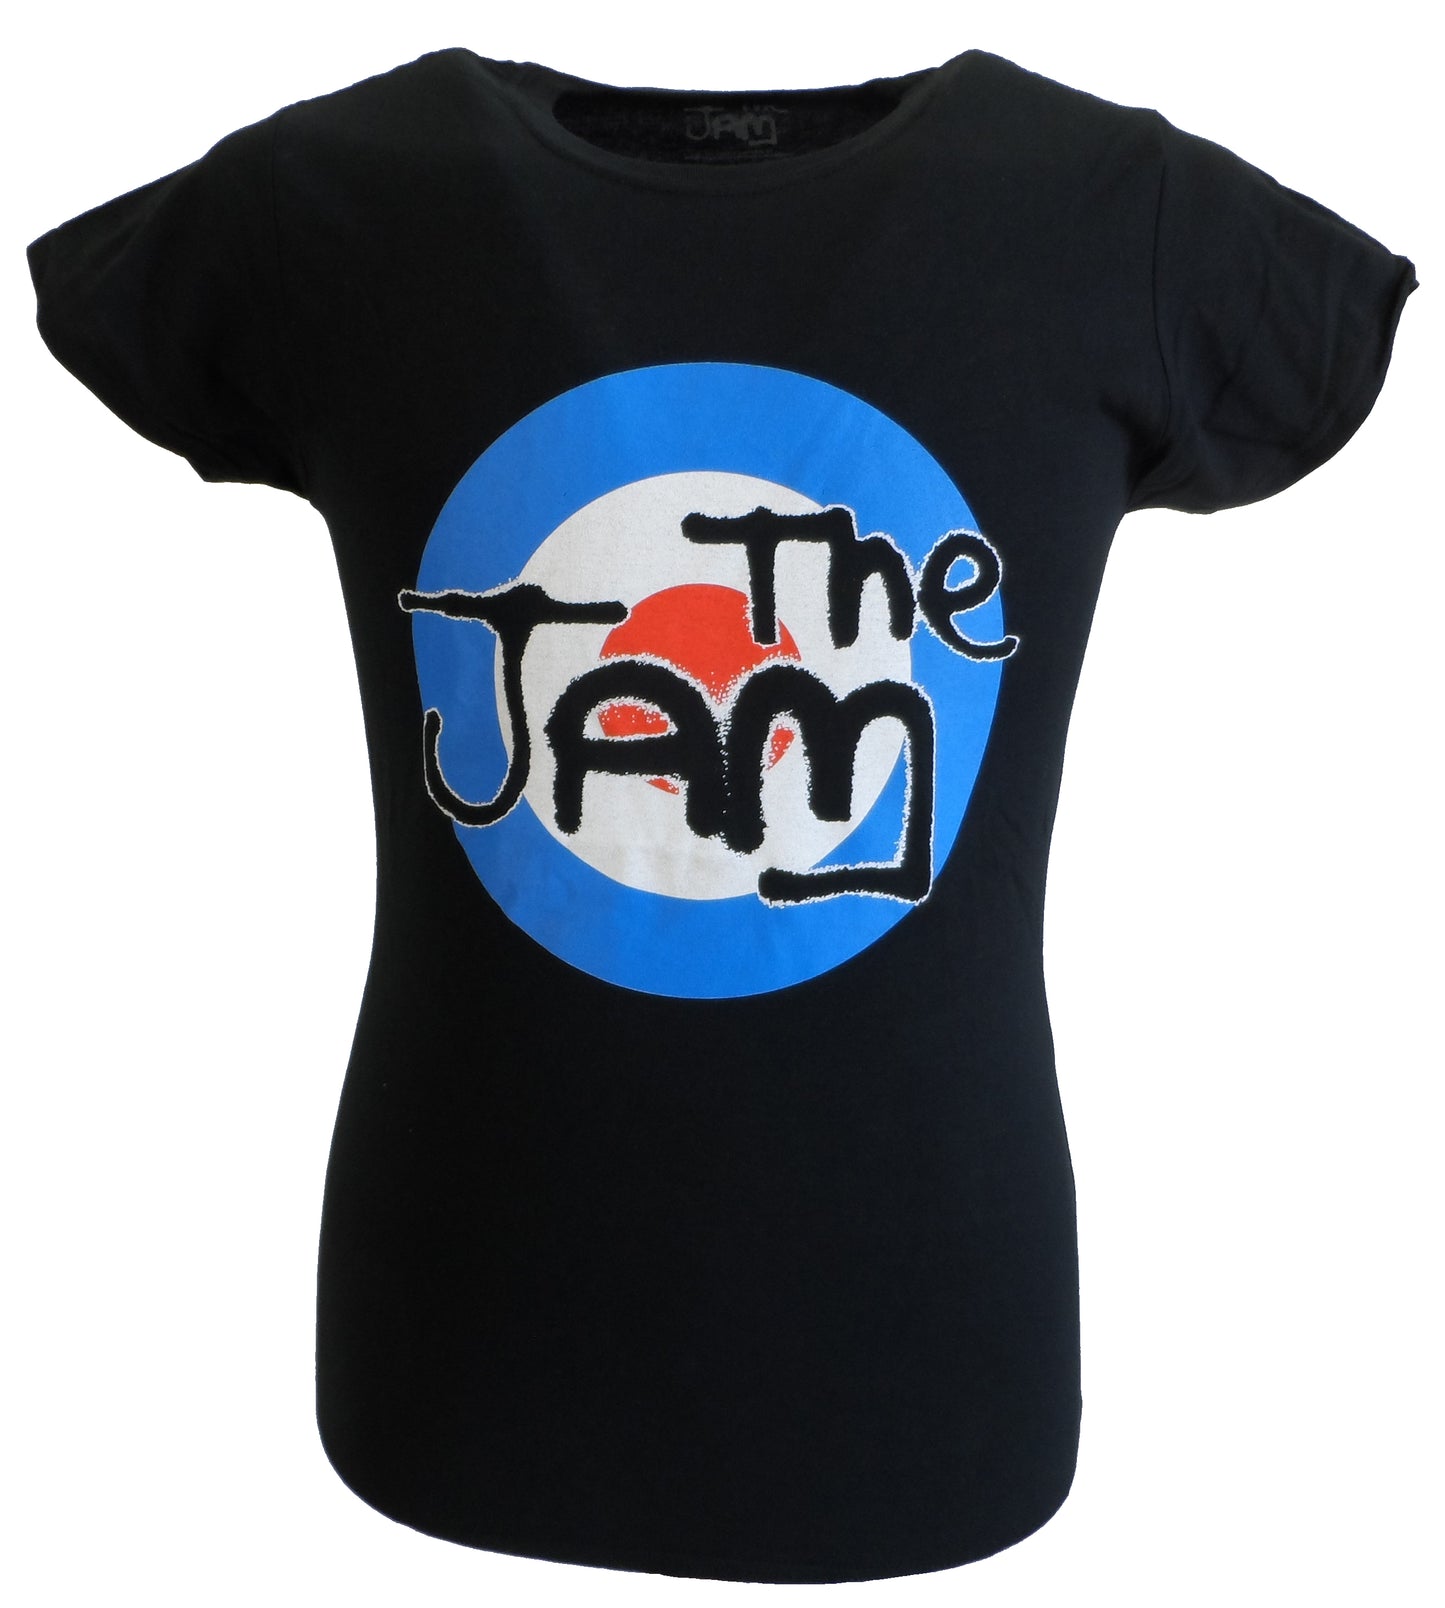 Camisetas de objetivo negro con licencia oficial The Jam para mujer.